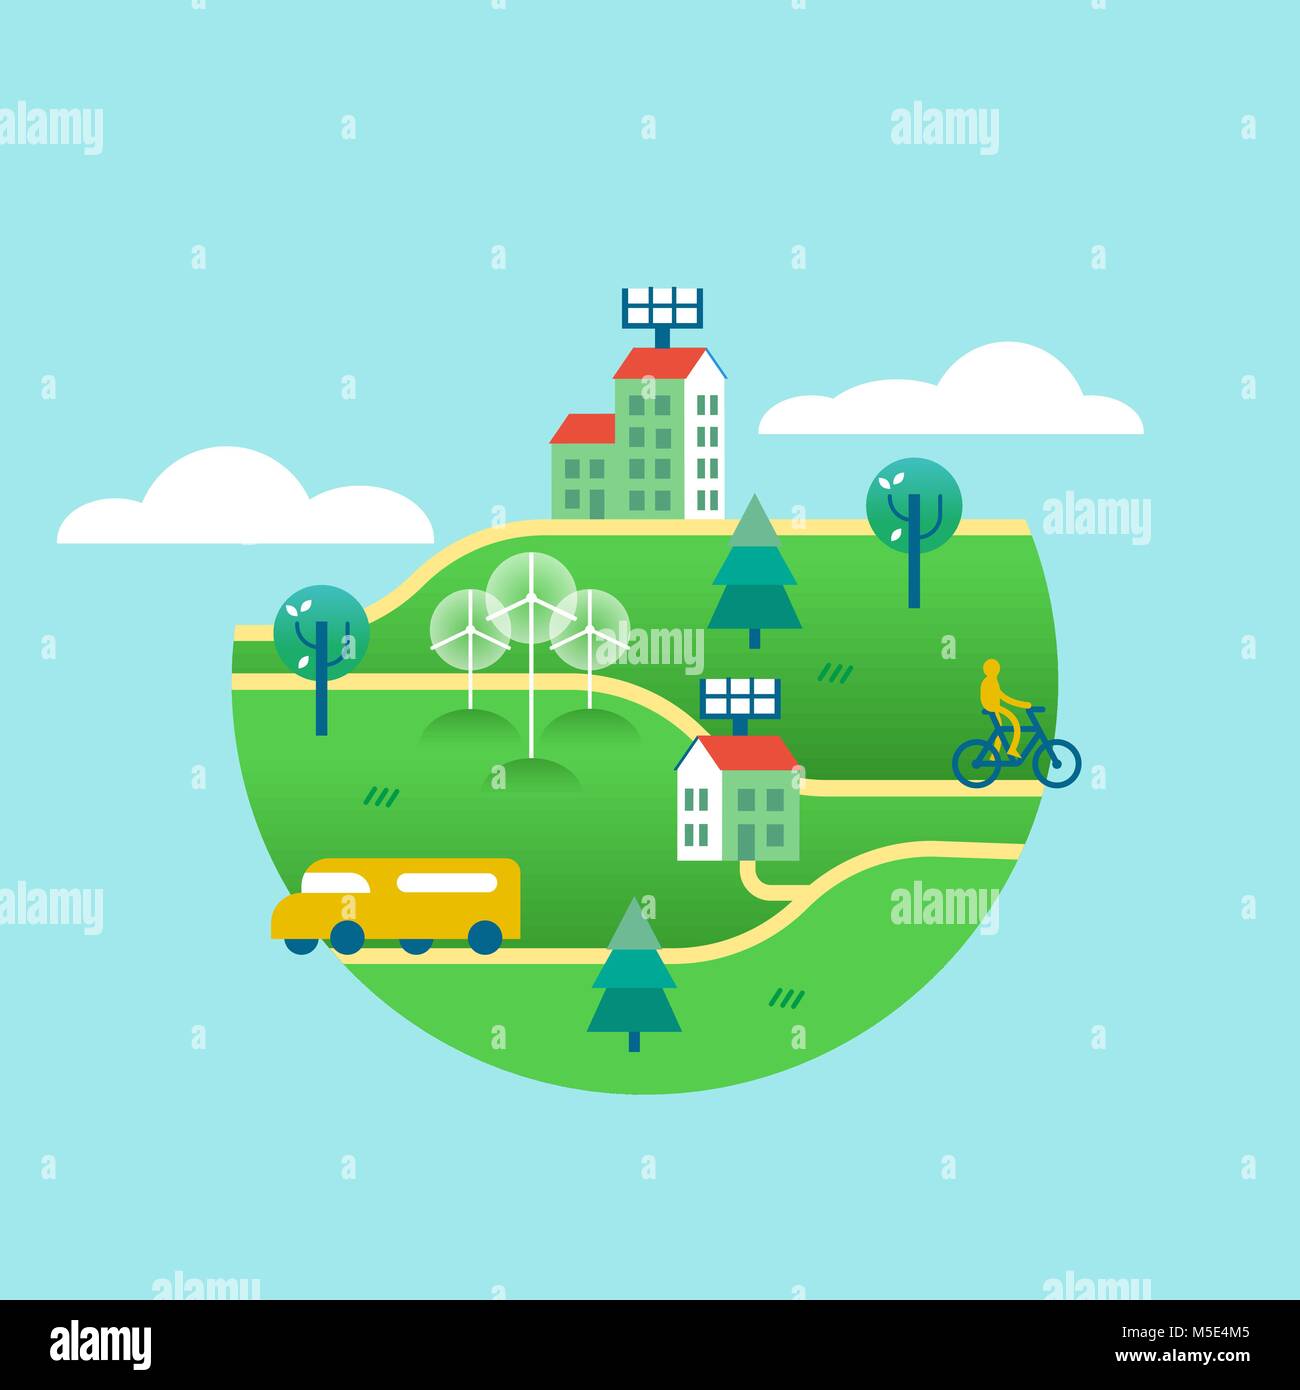 Mundo Verde ilustración del concepto, ciudad ecológica con paneles solares en las casas, las turbinas eólicas, transporte público y bicicletas. Diseño de estilo arte plana Ilustración del Vector